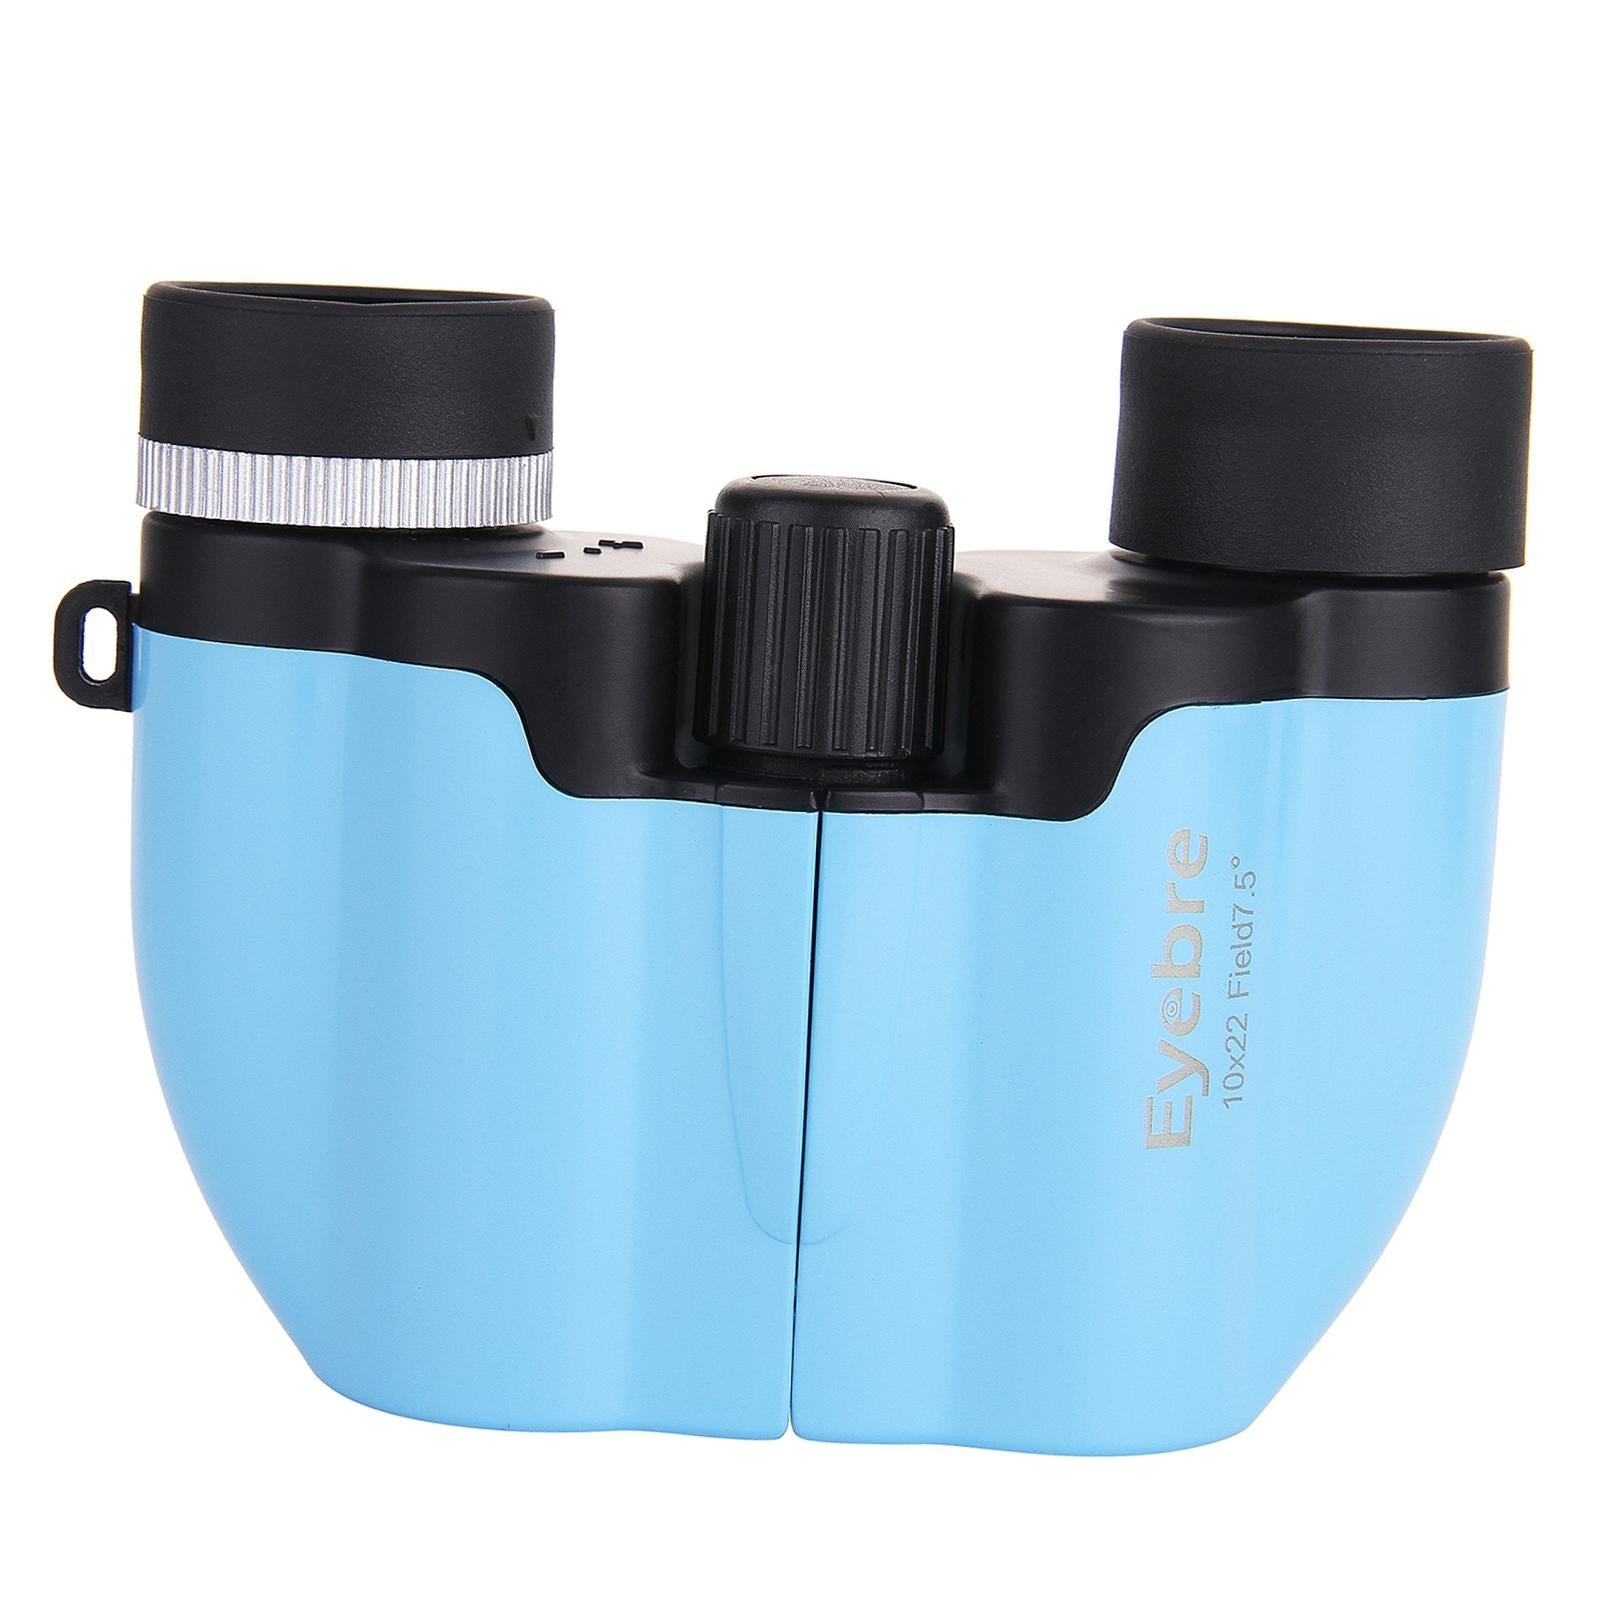 Binoculars Compact Lightweight Small for Bird Watching Outdoor Blue